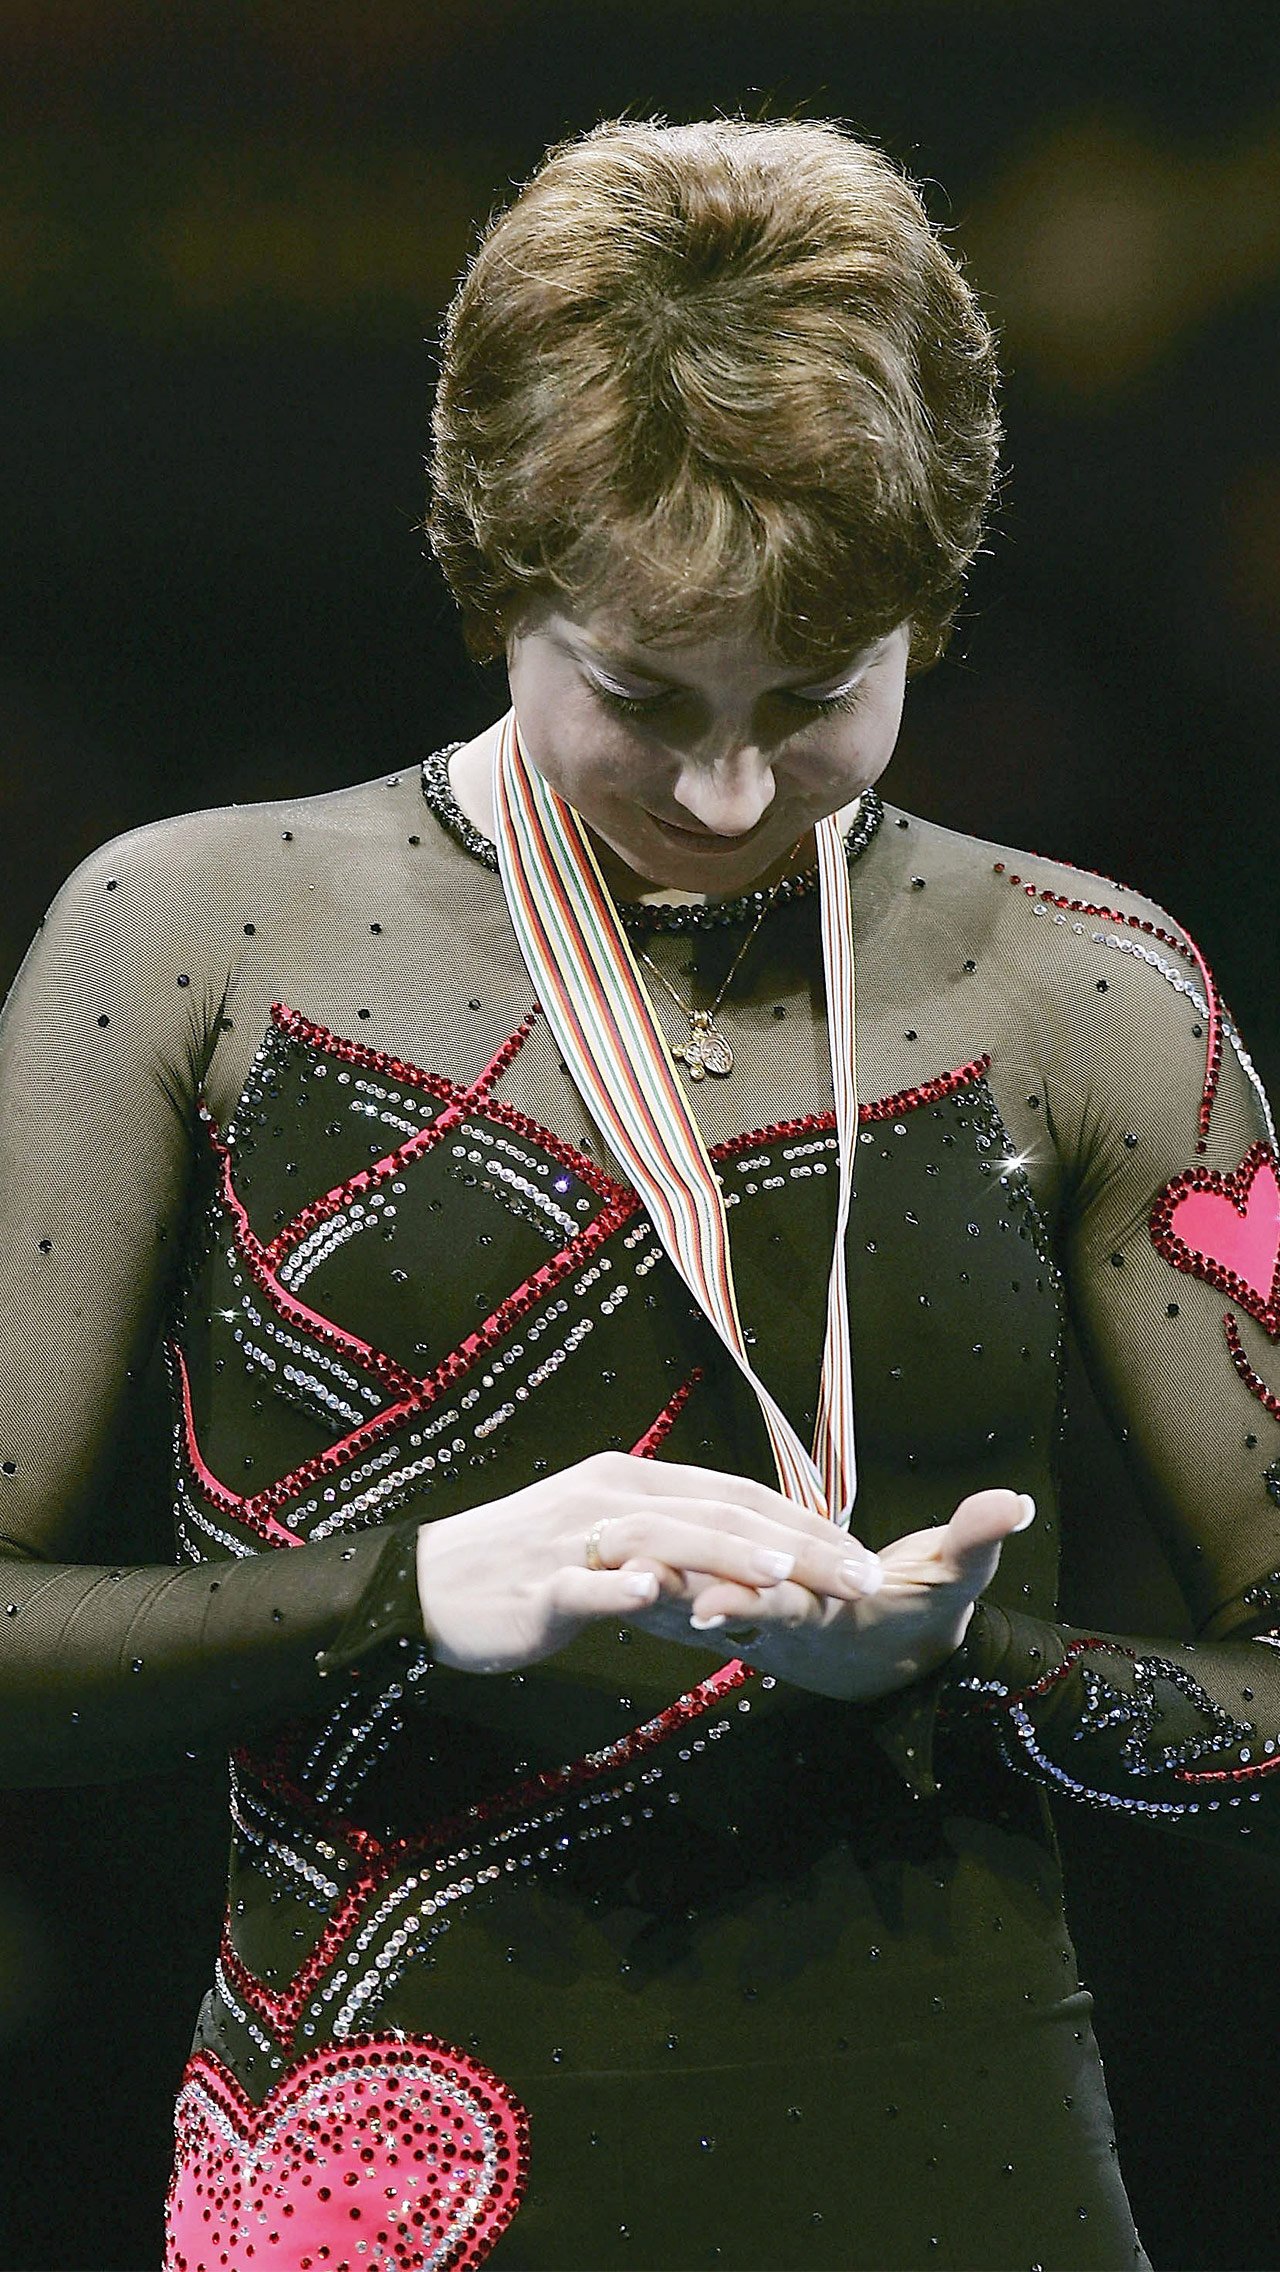 Первой чемпионкой Европы в российской истории стала Ирина Слуцкая. Фигуристка выигрывала первенство континента семь раз — больше всех в истории! В нынешнее время повторить её достижение нереально.